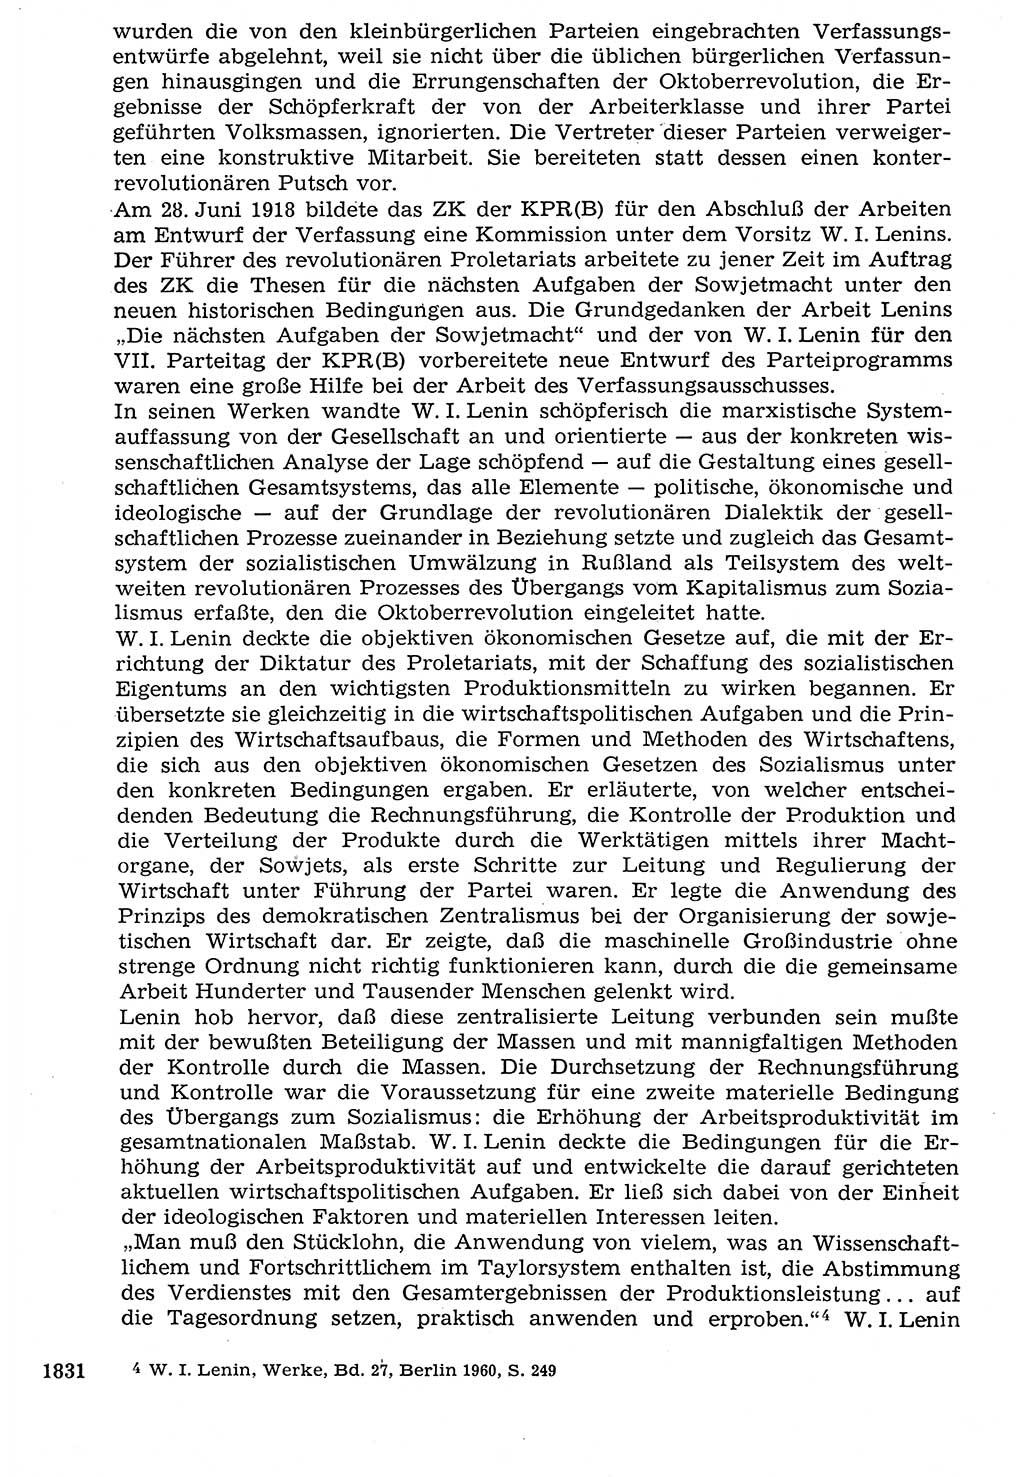 Staat und Recht (StuR), 17. Jahrgang [Deutsche Demokratische Republik (DDR)] 1968, Seite 1831 (StuR DDR 1968, S. 1831)